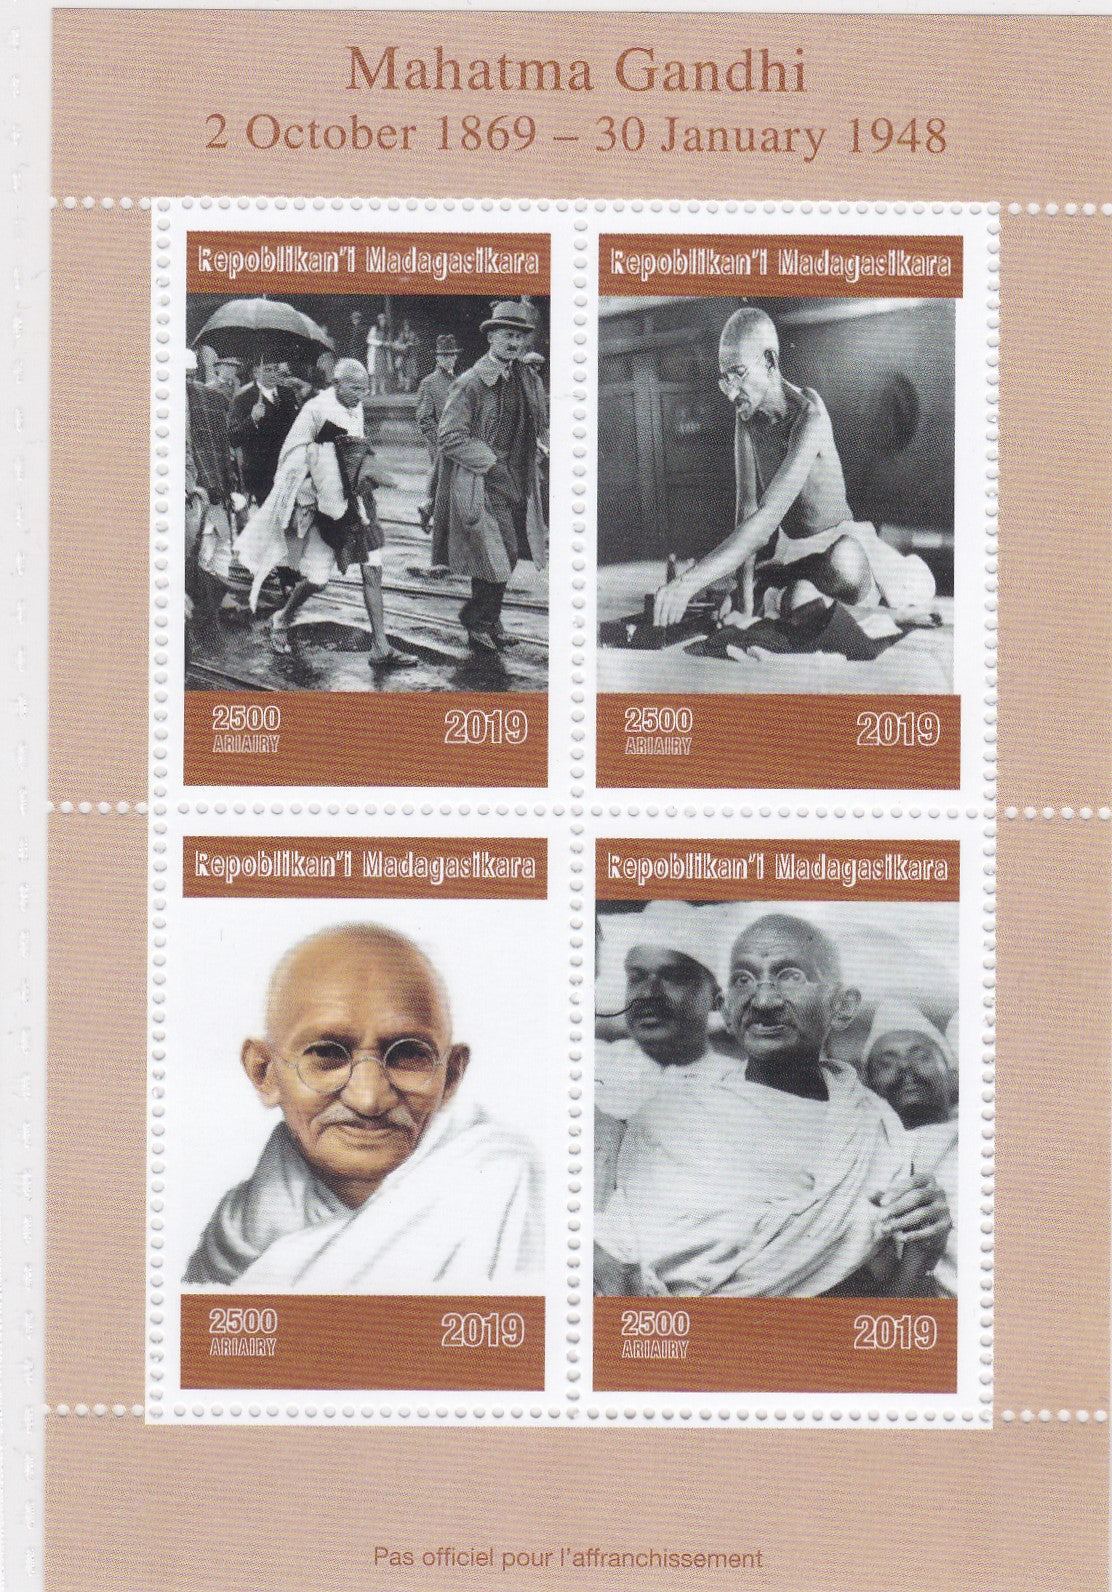 मेडागास्कर-महात्मा गांधी 2019 टिकट